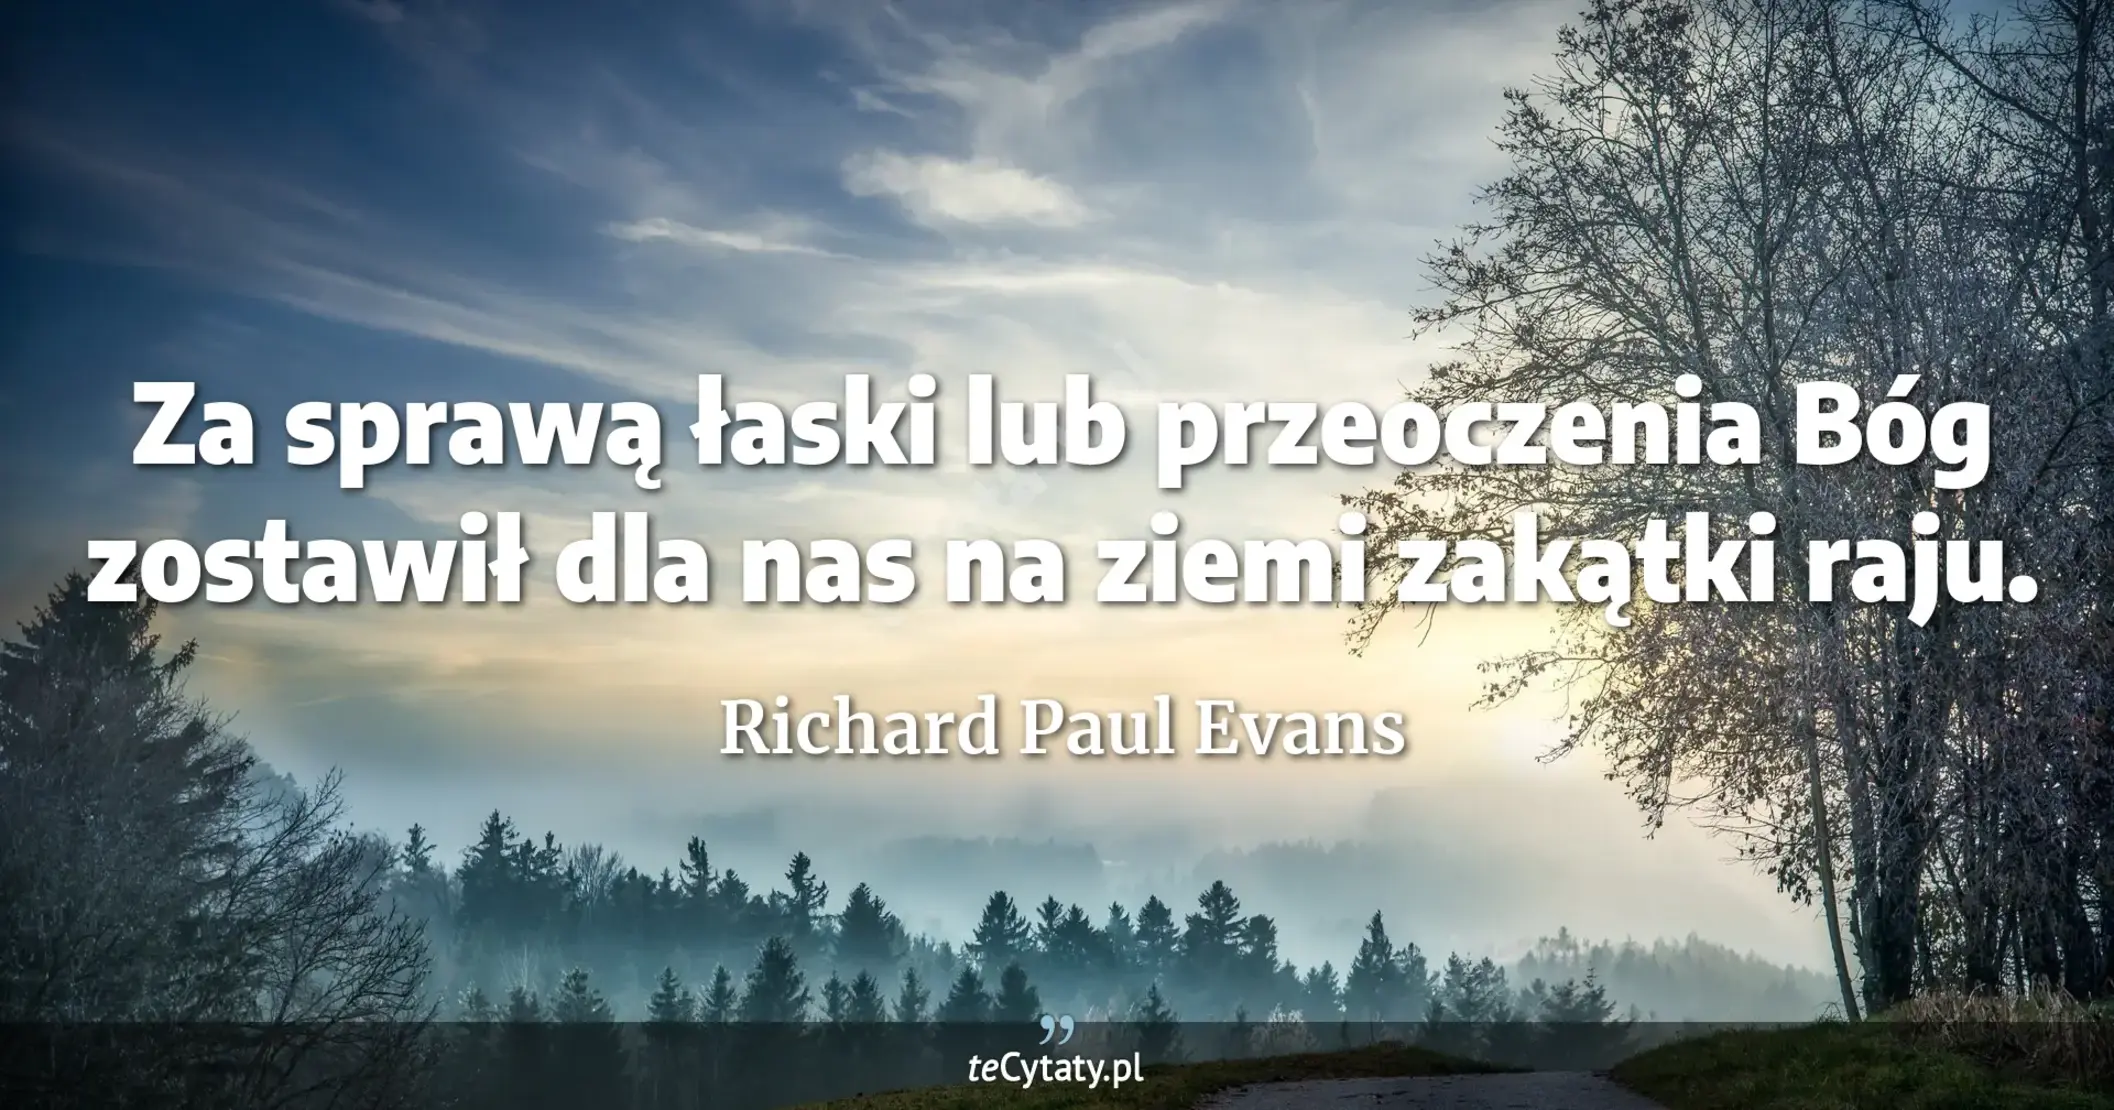 Za sprawą łaski lub przeoczenia Bóg zostawił dla nas na ziemi zakątki raju. - Richard Paul Evans